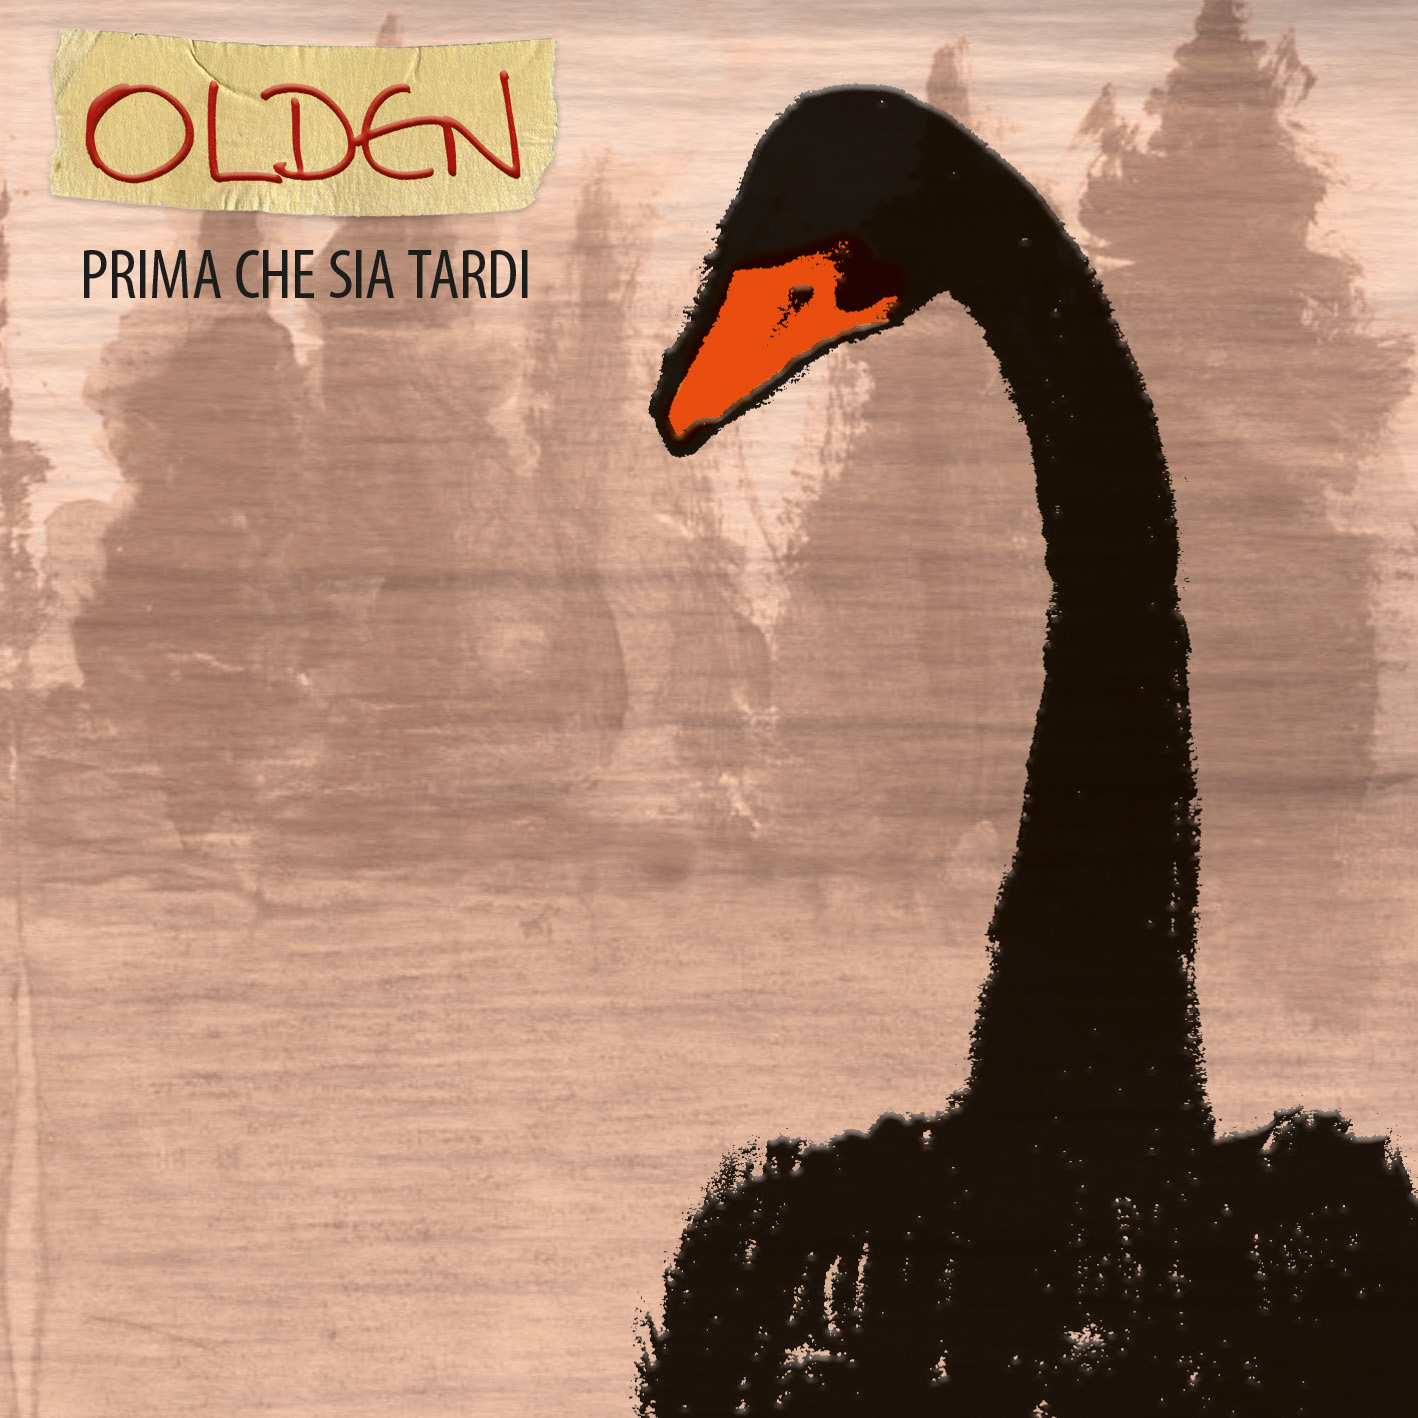 Olden – Prima che sia tardi – CD Booklet.indd